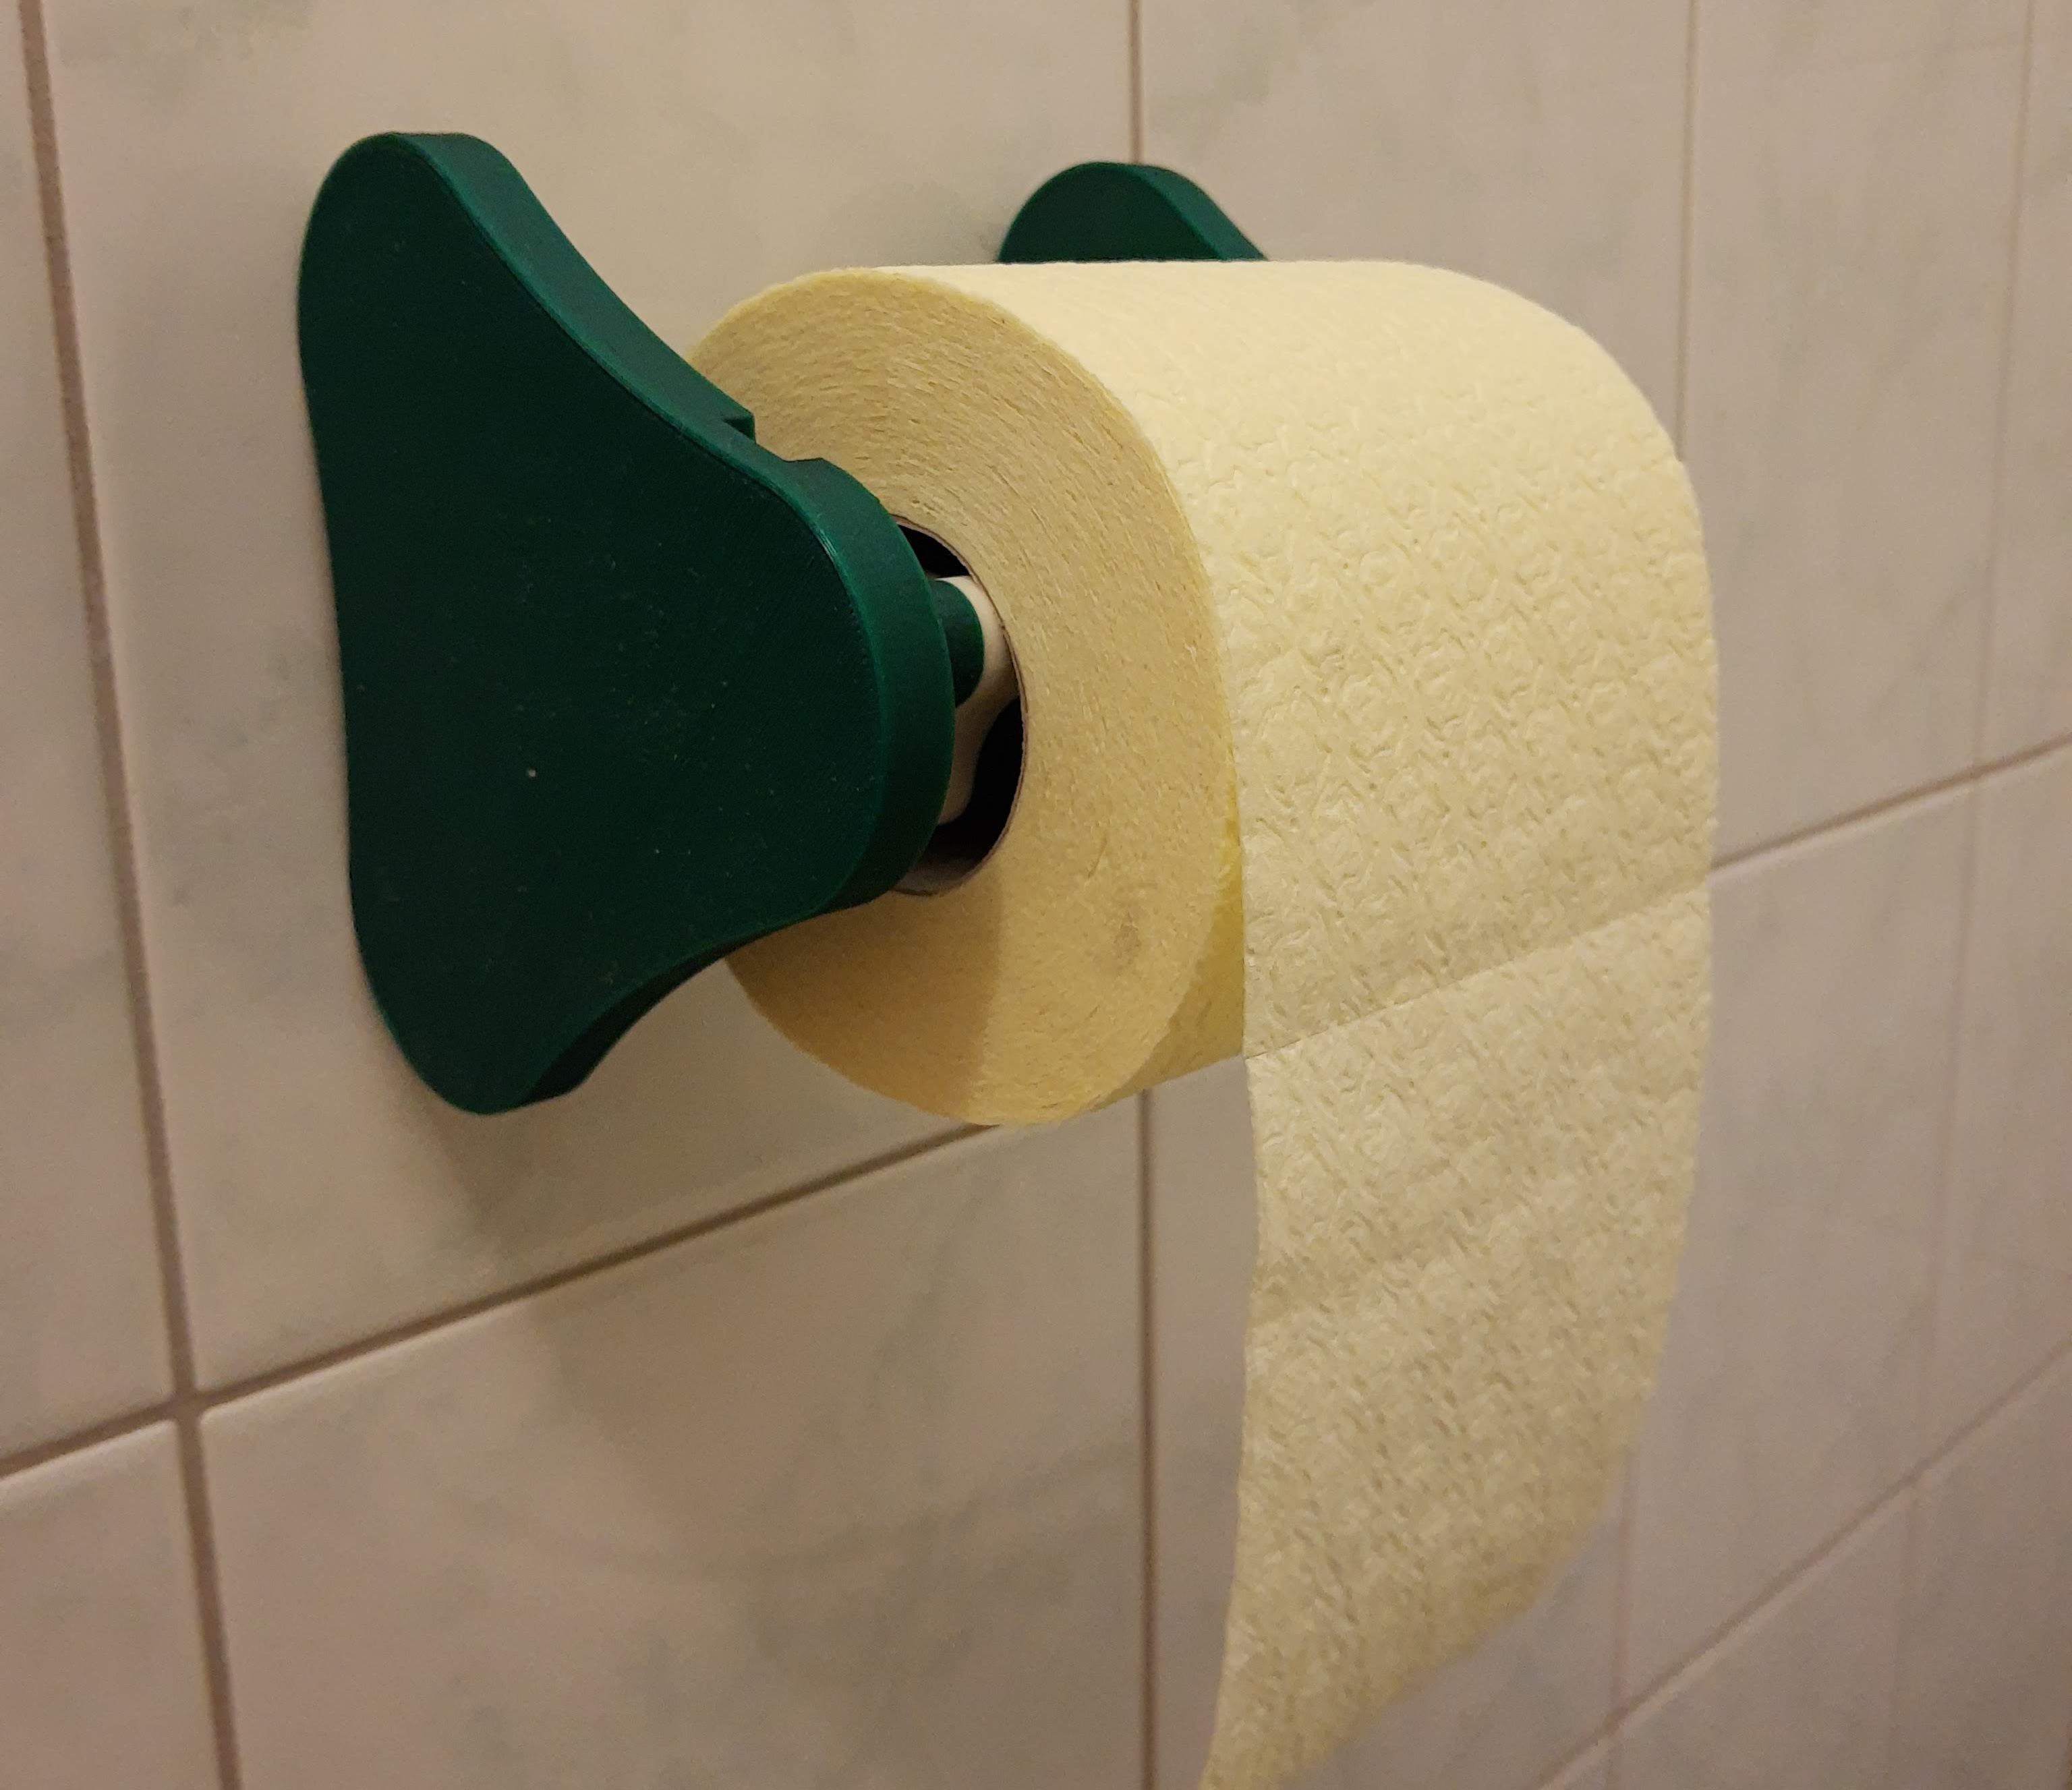 Toilet Paper Dispenser